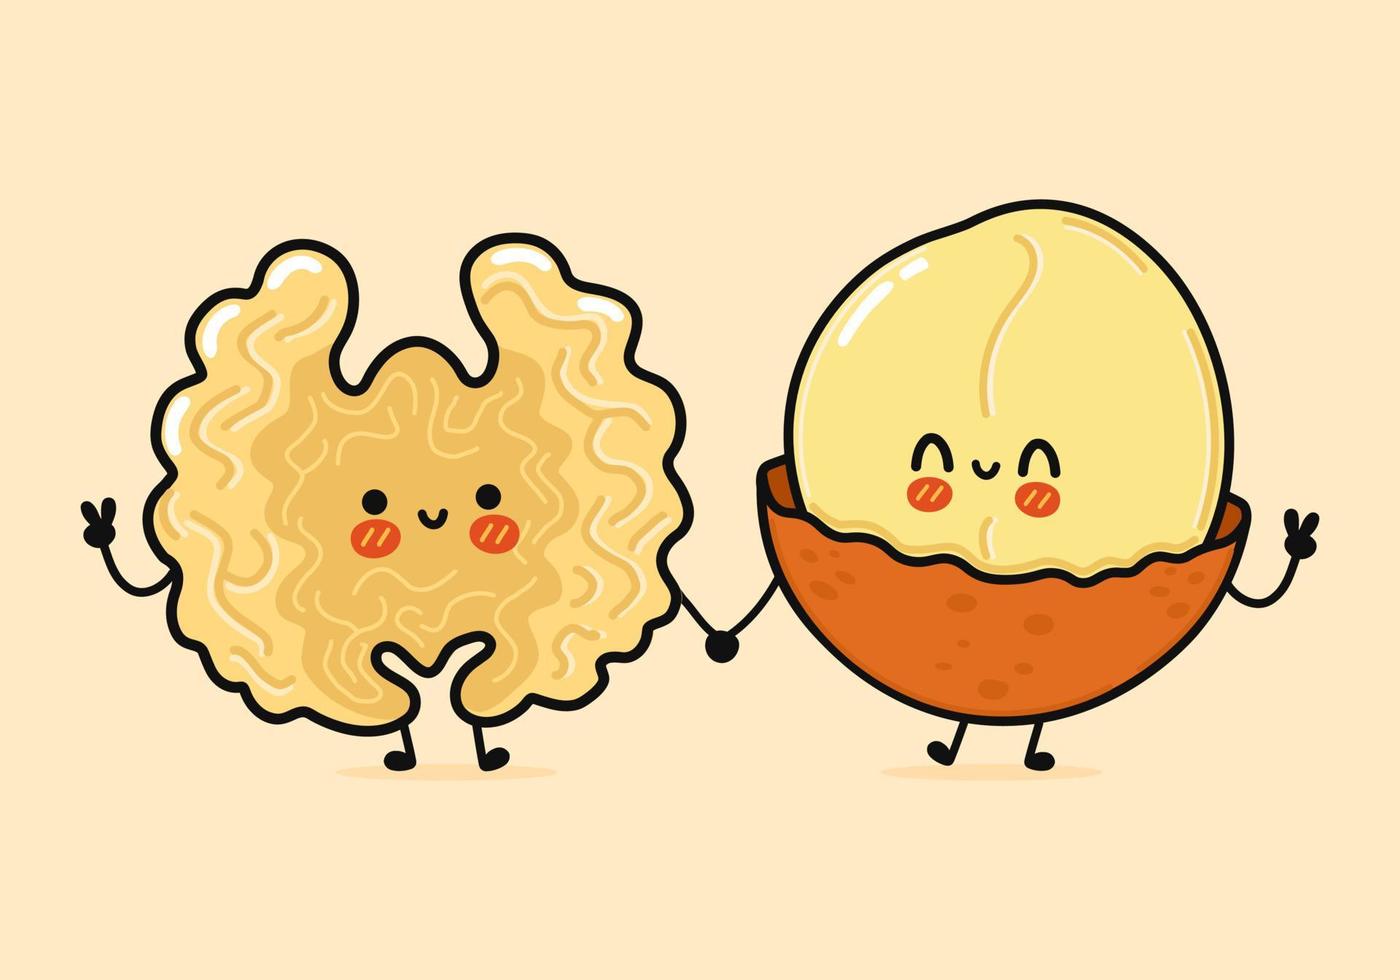 schattig, grappig vrolijk walnoot- en macadamia-karakter. vector hand getekend kawaii stripfiguren, illustratie pictogram. grappige cartoon walnoot en macadamia vrienden